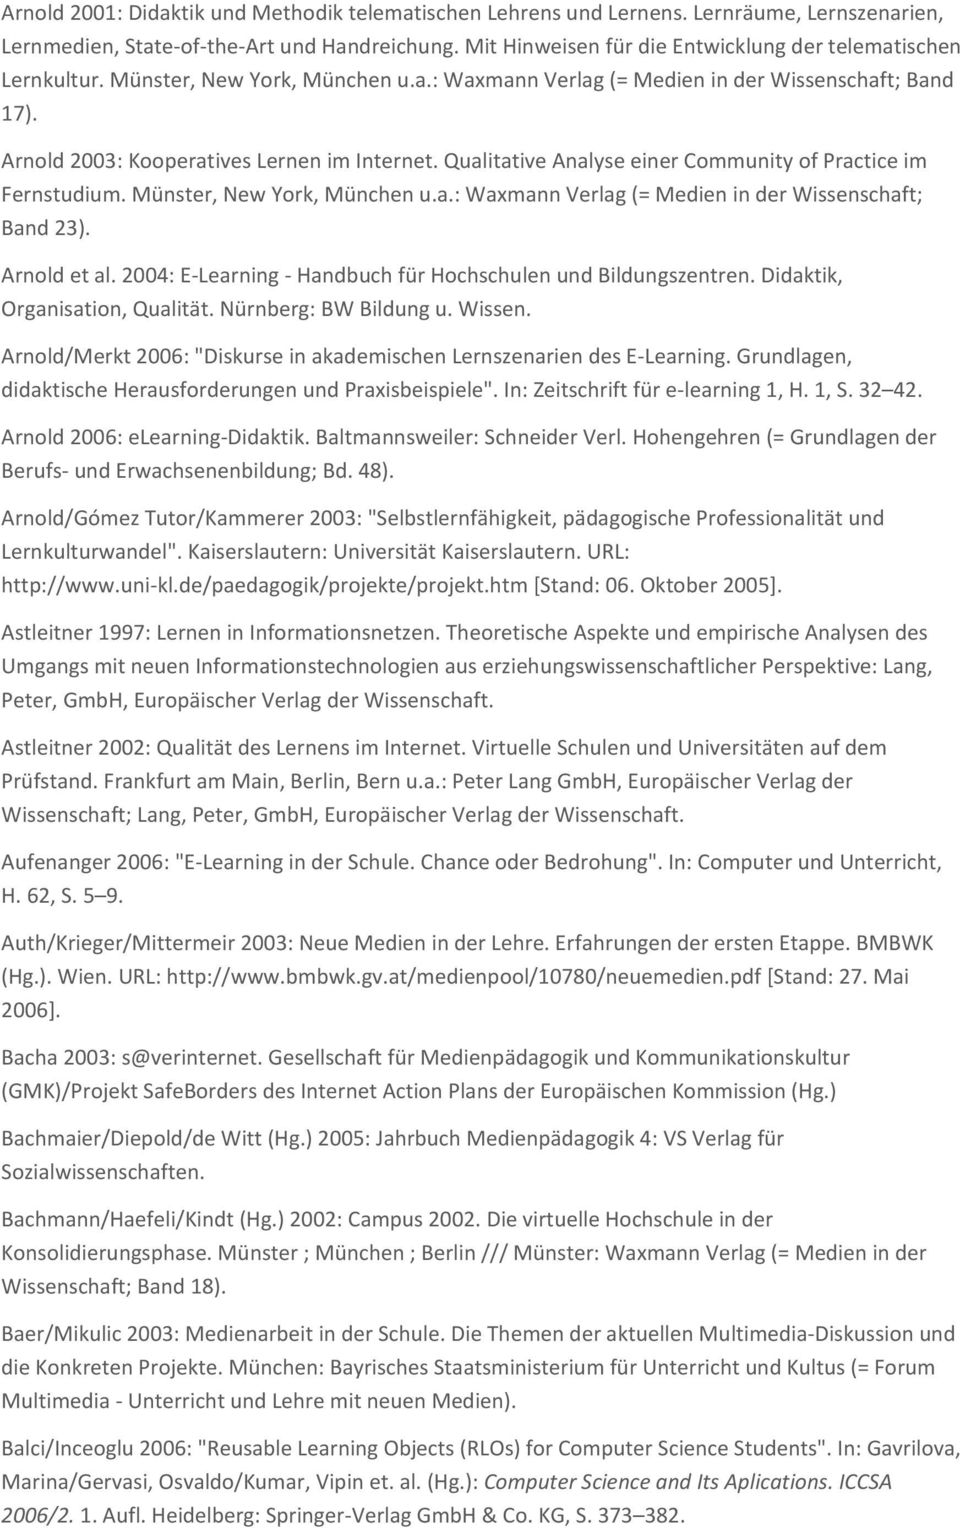 Qualitative Analyse einer Community of Practice im Fernstudium. Münster, New York, München u.a.: Waxmann Verlag (= Medien in der Wissenschaft; Band 23). Arnold et al.